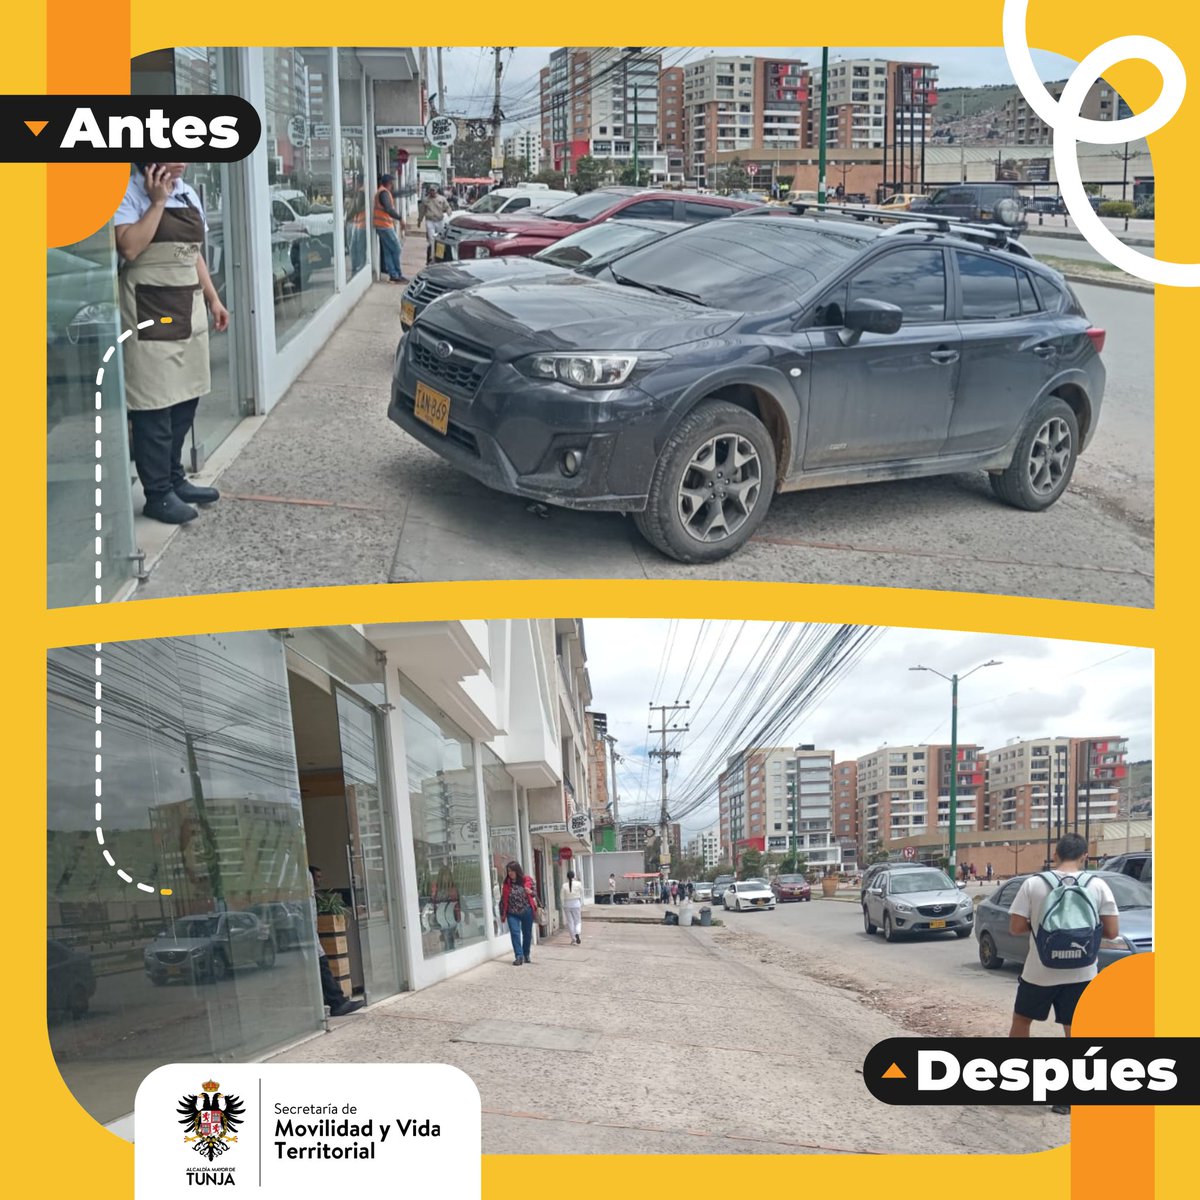 Nuestros agentes de tránsito realizan operativos de despeje en el paso para peatones frente al C.C Unicentro en la ciudad de #Tunja.

Recomendamos no estacionar en lugares prohibidos para mantener libre el espacio público para peatones.

#ConectandoConLaMovilidad